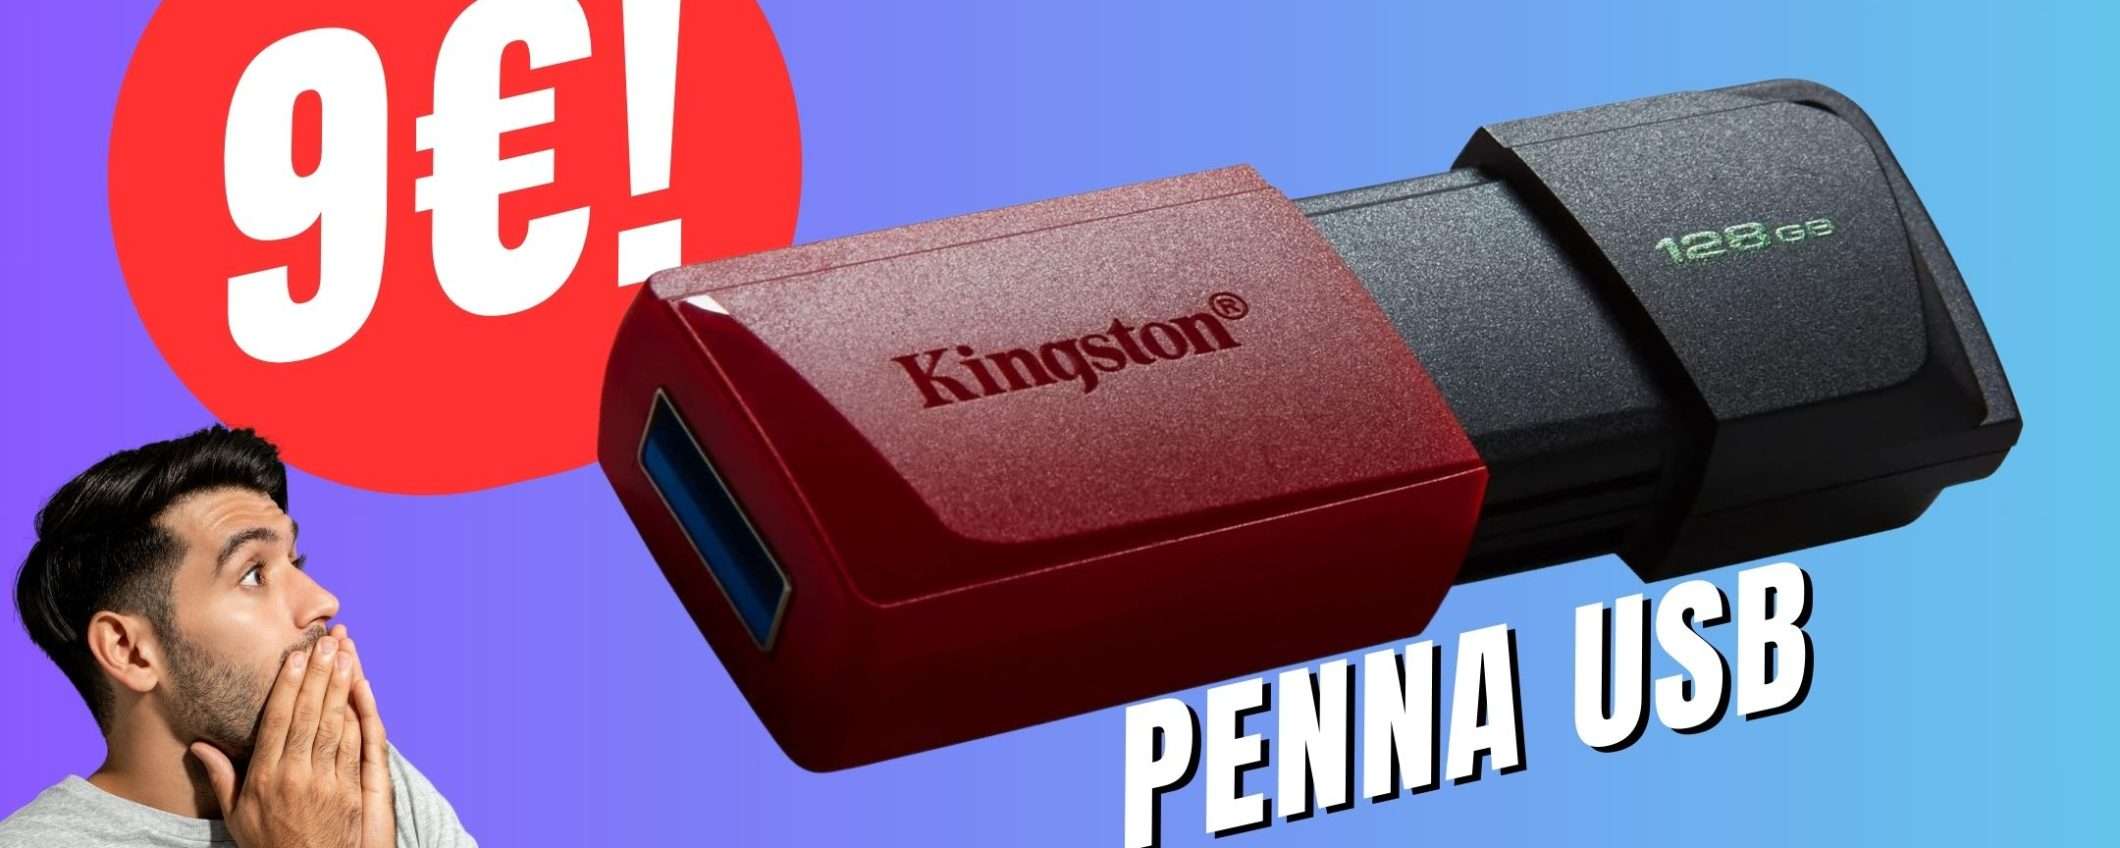 La Pendrive USB da 128GB di Kingston CROLLA s soli 9€!